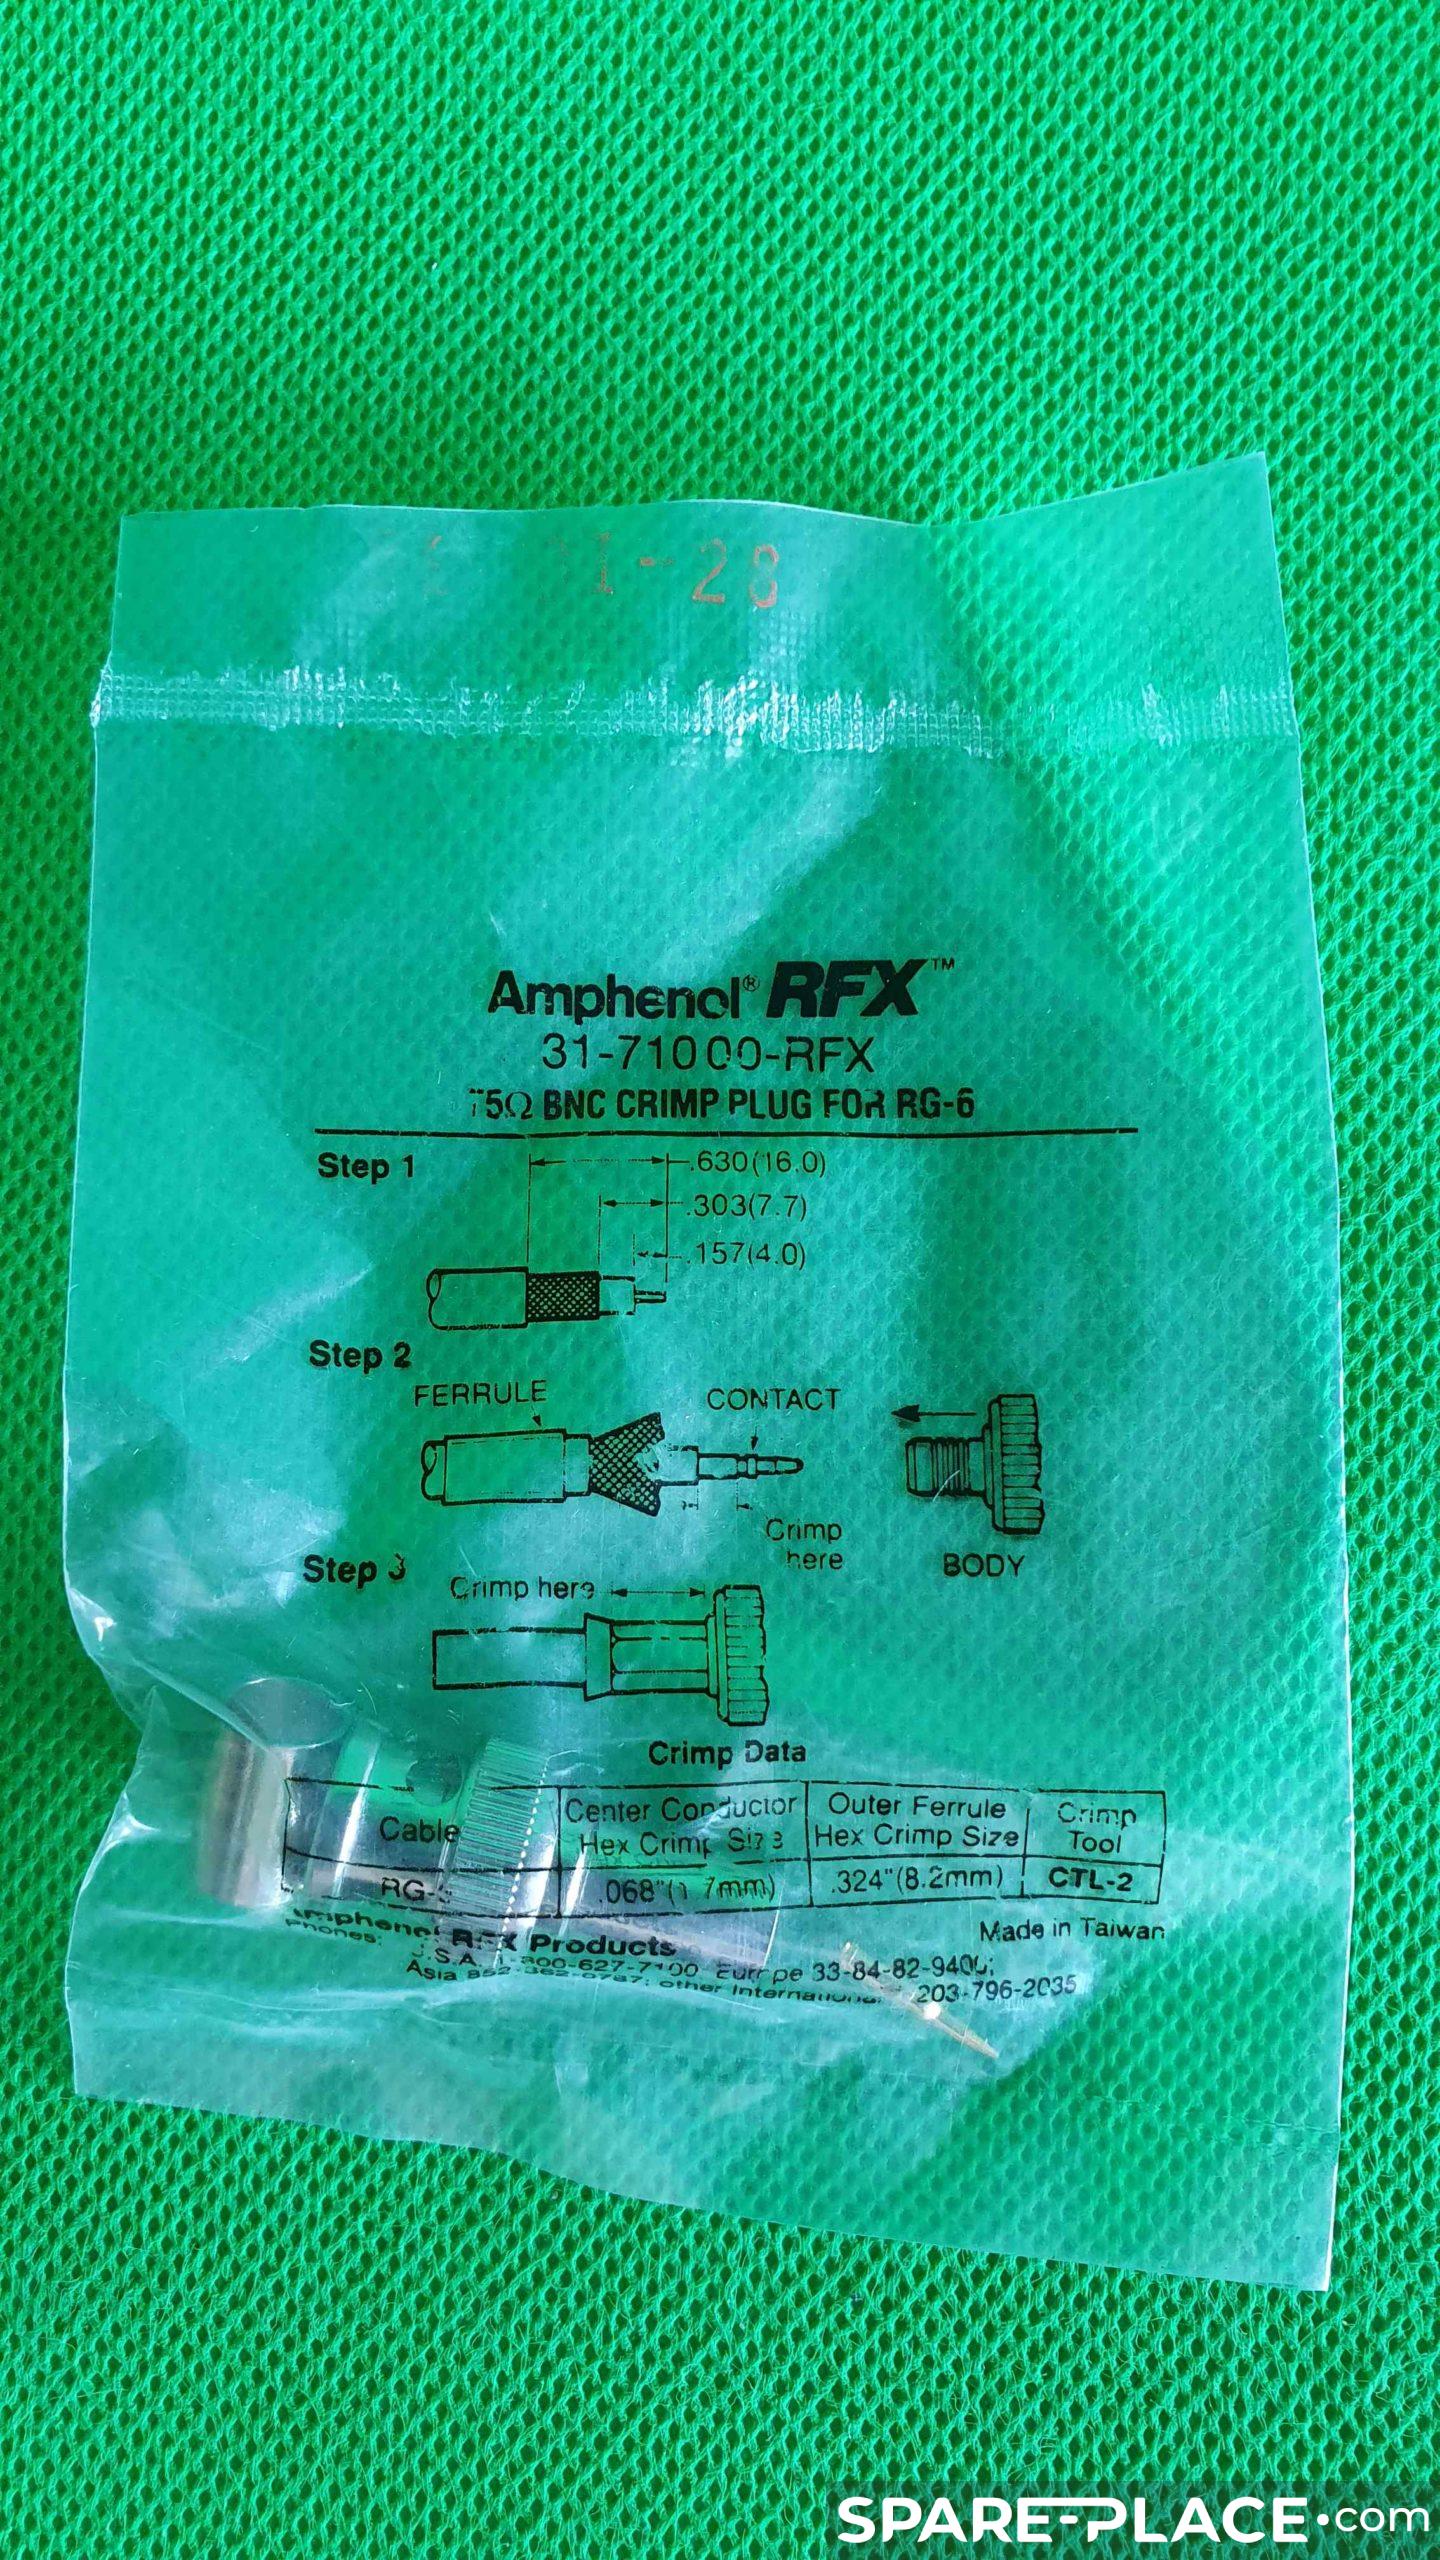 Référence 31-710 00-RFX de la marque Amphenol